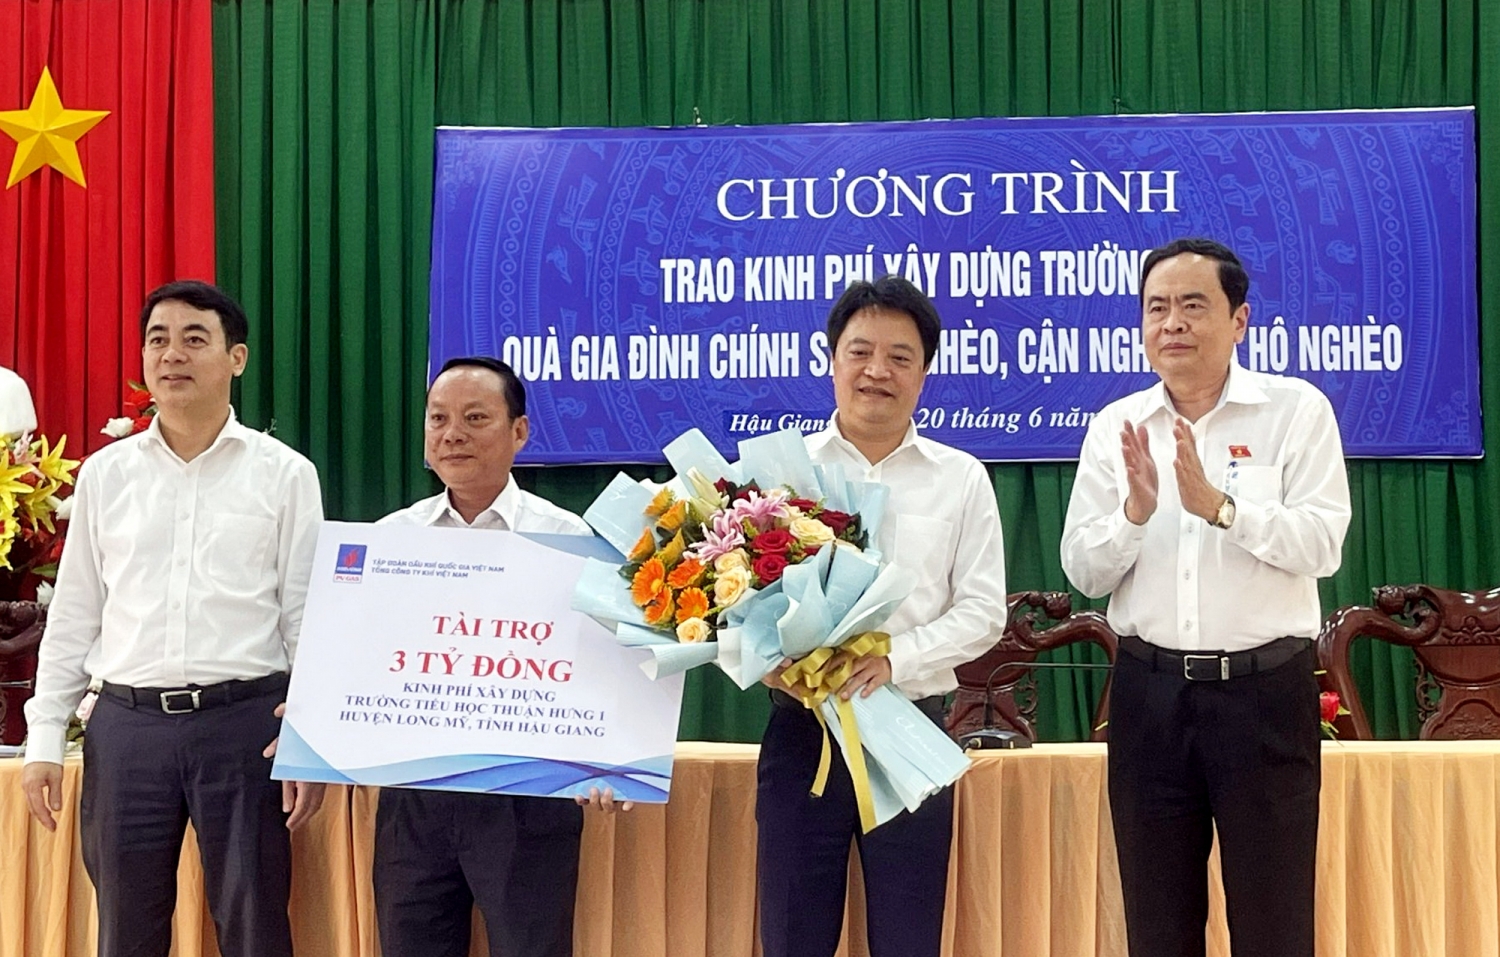 PV GAS tài trợ 5 tỷ đồng xây dựng 2 trường học tại tỉnh Hậu Giang